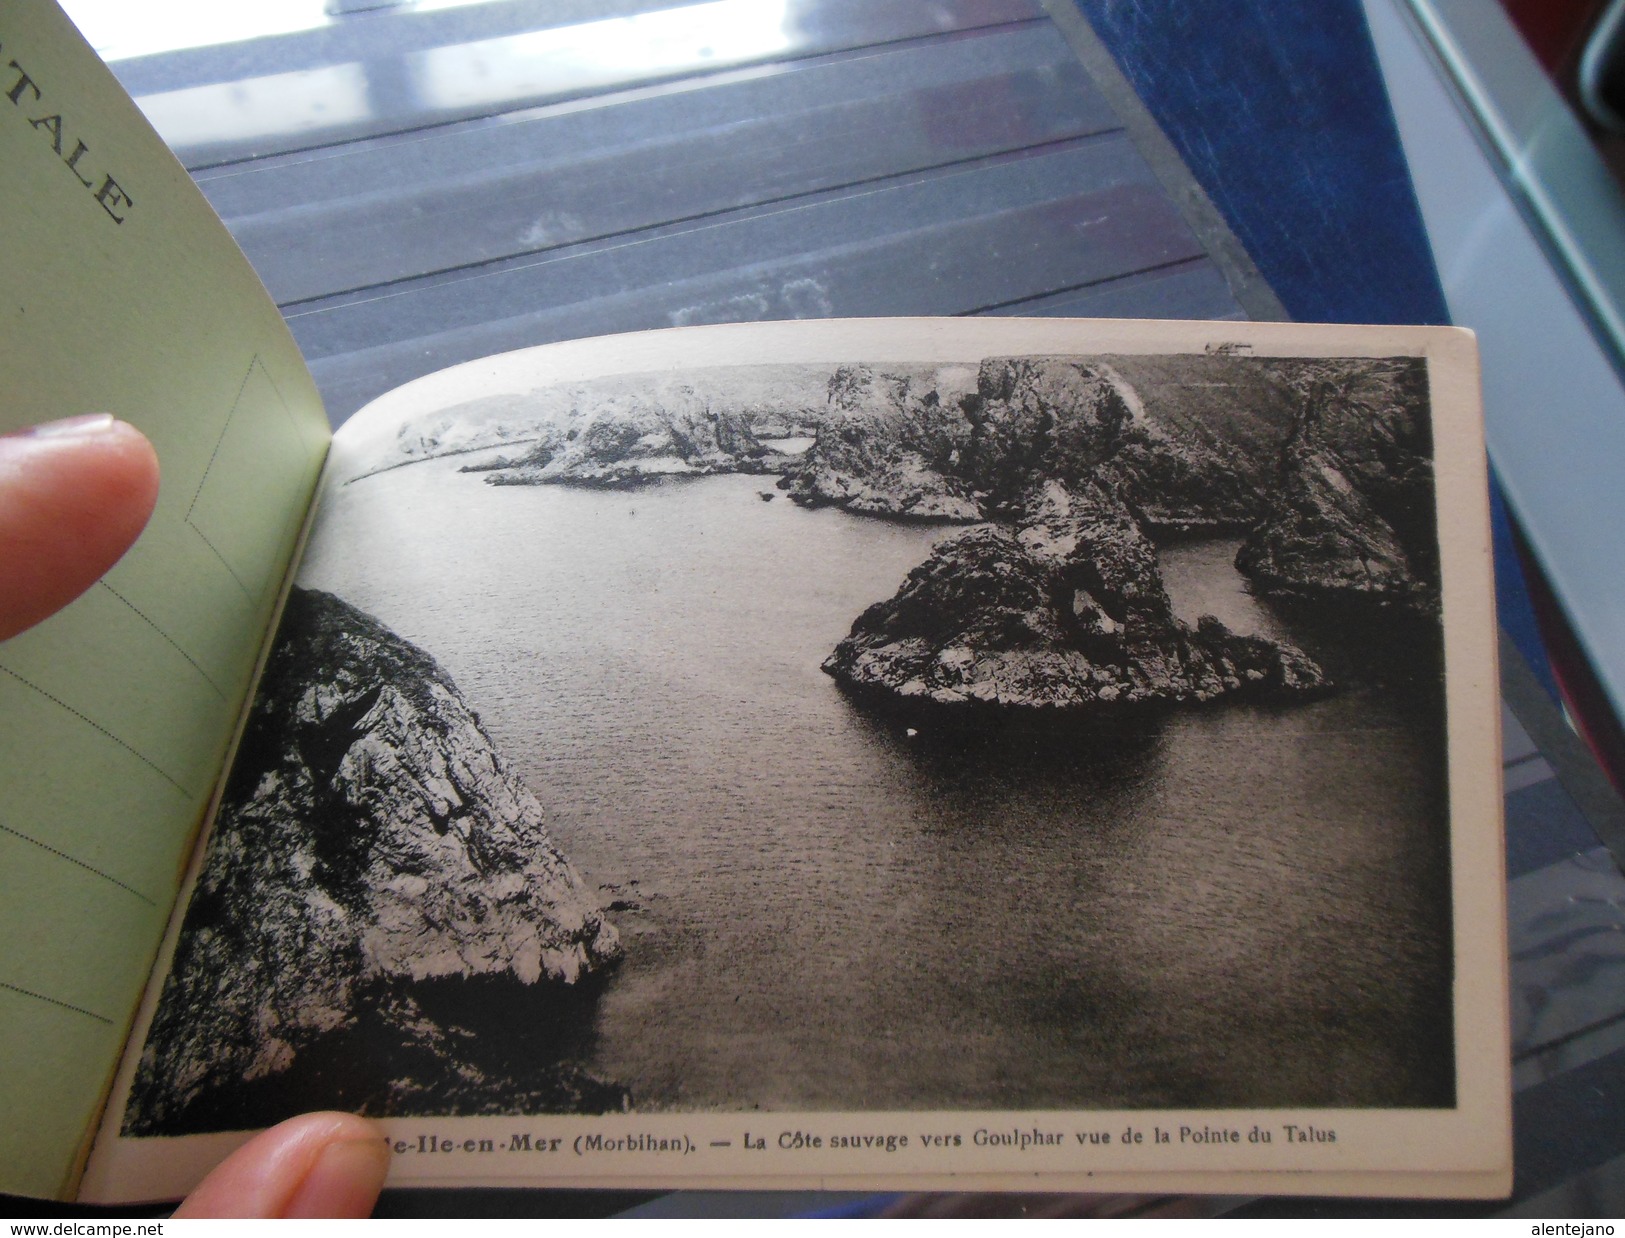 Carnet complet 20 cartes postales Belle-Ile-en-Mer - voir scans